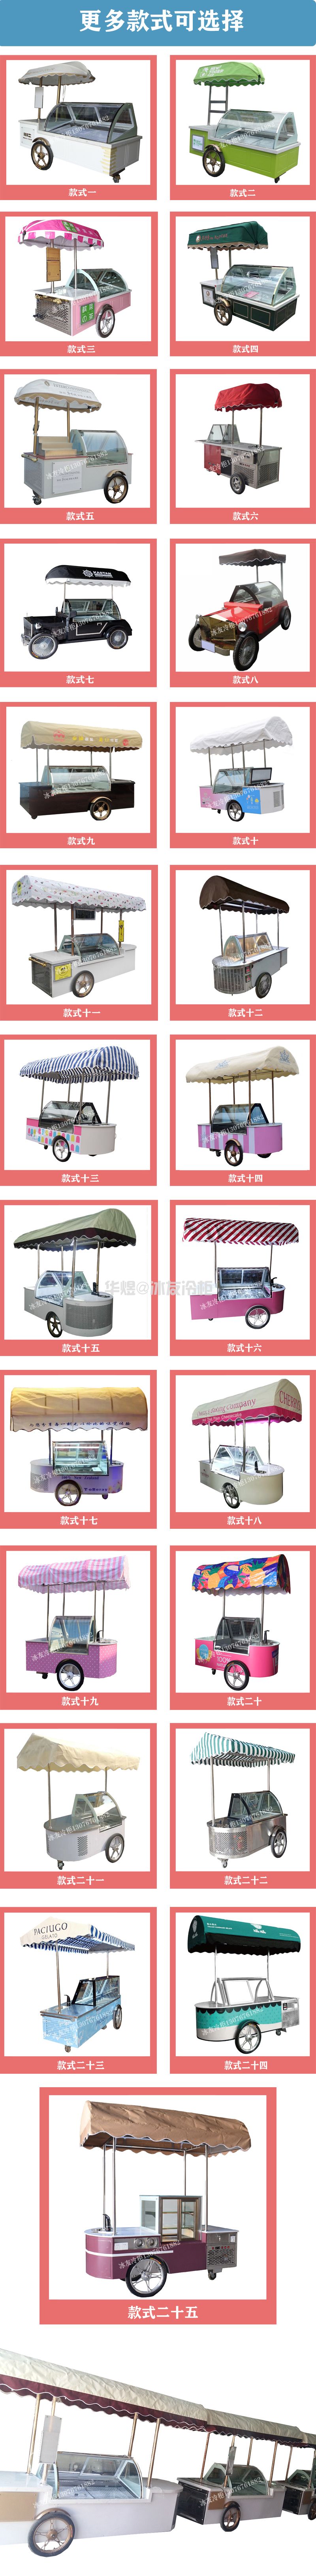 冰友12盘冰淇淋车流动式冰淇淋花车展示柜移动雪糕车(图18)